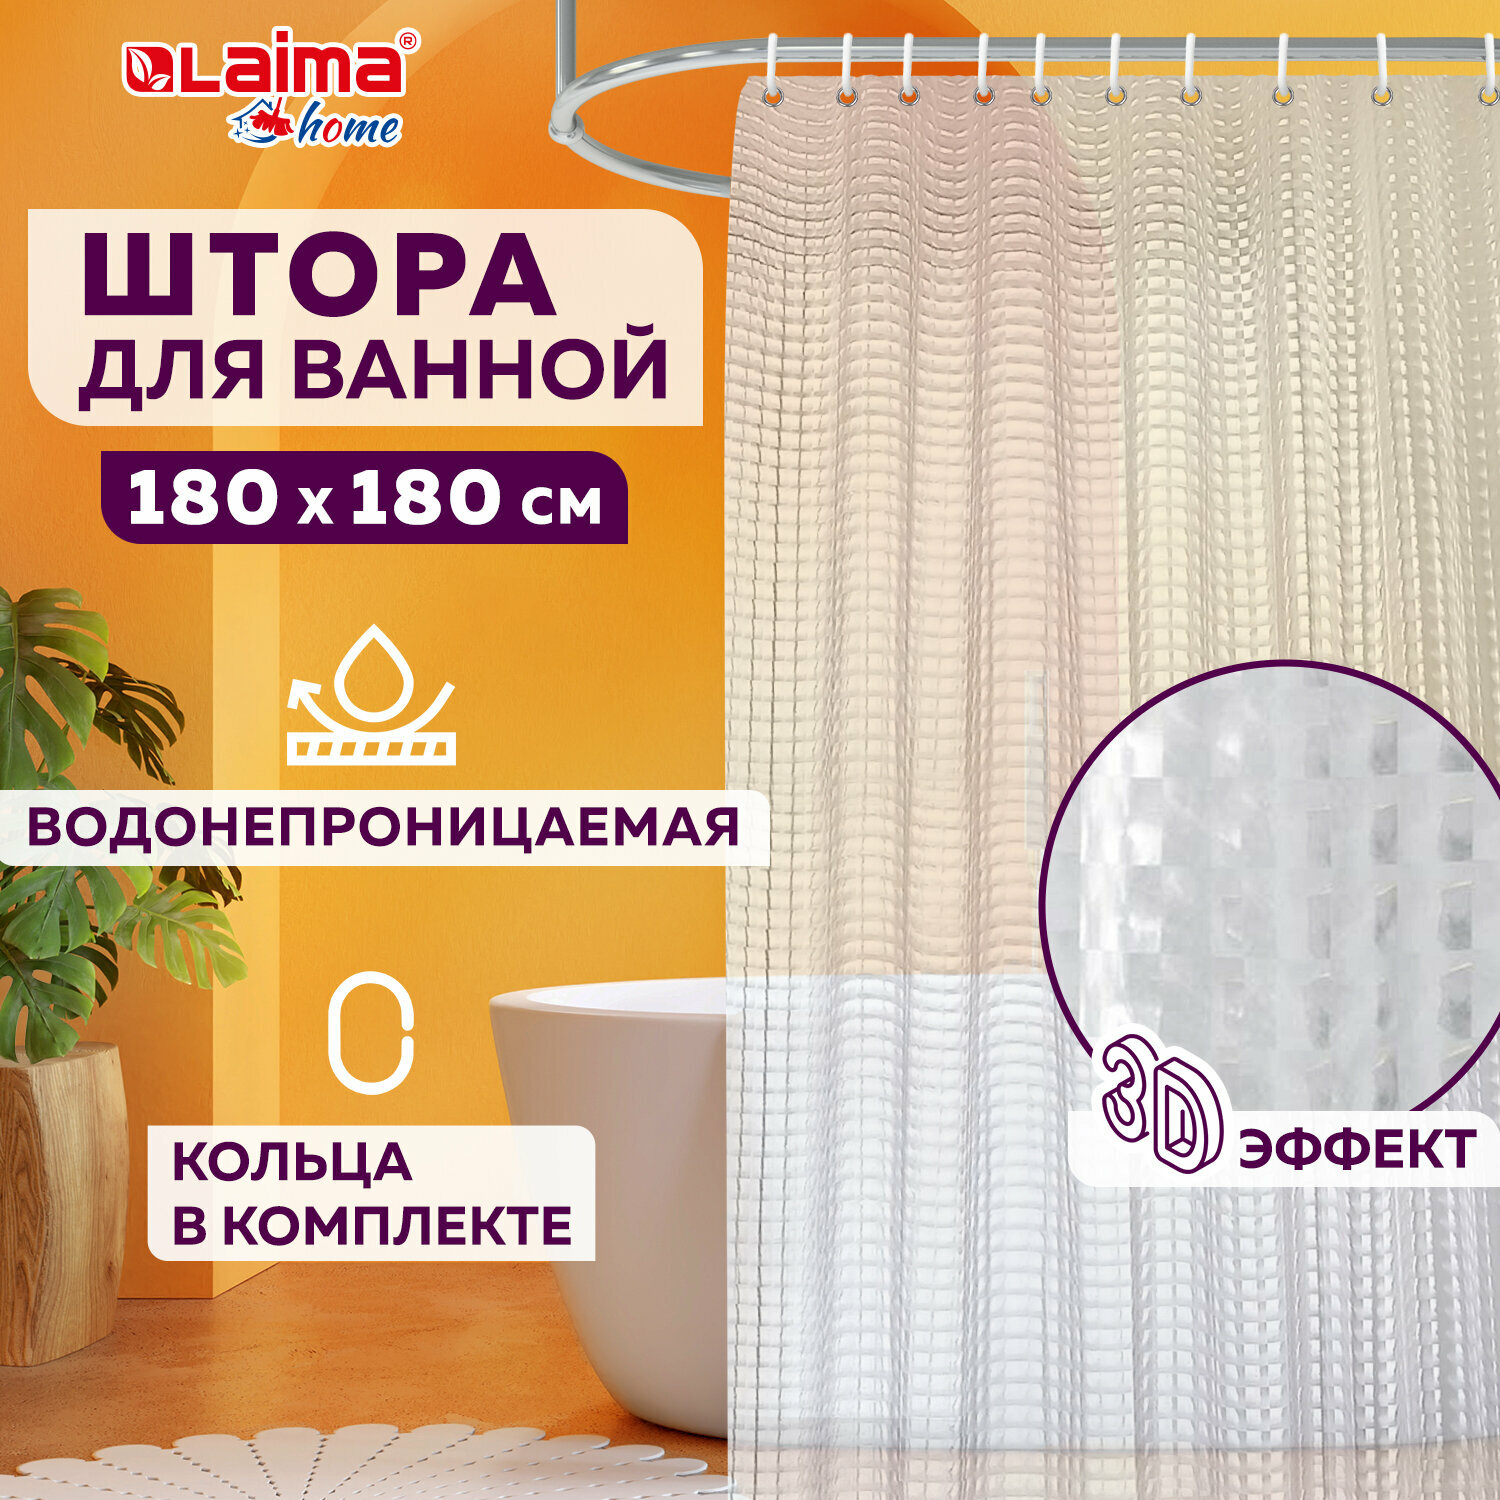 Штора для ванной комнаты Lens Flare с 3D эффектом водонепроницаемая, 180х180см, Laima Home, 608450